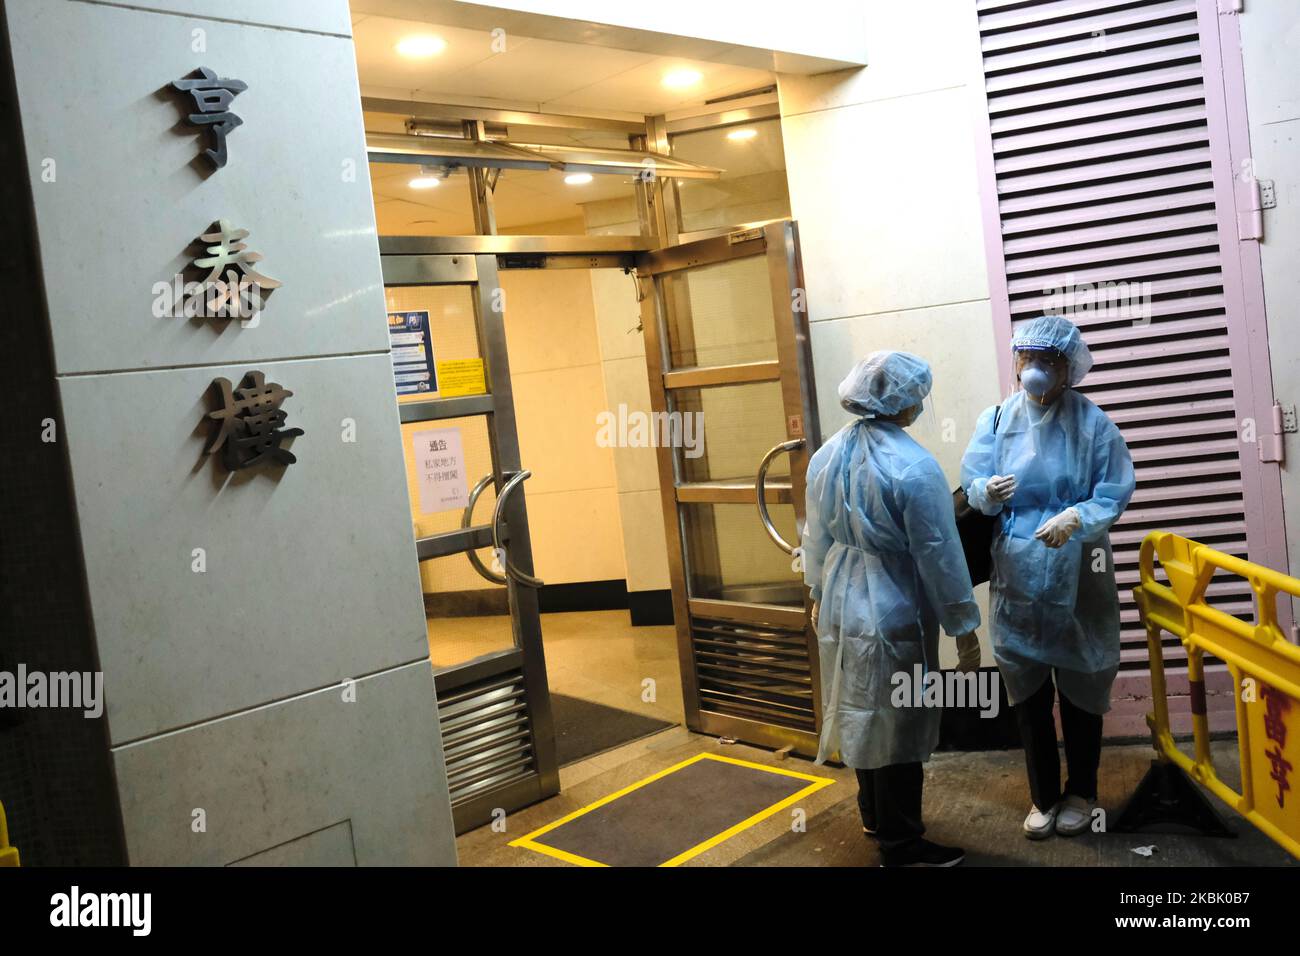 Beamte, die PSA tragen, stehen am Eingang des Heng Tai Hauses im Fu Heng Estate, wo zwei Personen, die in diesem Gebäude leben, am 14. März 2020 in Hongkong, China, mit dem Covid-19 diagnostiziert wurden. Das Coronavirus oder Covid-19, das aus Wuhan China stammt, hat über 120.000 infiziert und 4617 Menschen weltweit getötet. Die Weltgesundheitsorganisation (WHO) hat den Covid-19 zu einem Ausbruch erklärt, die Regierung hat beschlossen, einige Bewohner im Heng Tai House zu evakuieren, nachdem zwei Bewohner einen positiven Covid-19-Test durchgeführt hatten. (Foto von Vernon Yuen/NurPhoto) Stockfoto